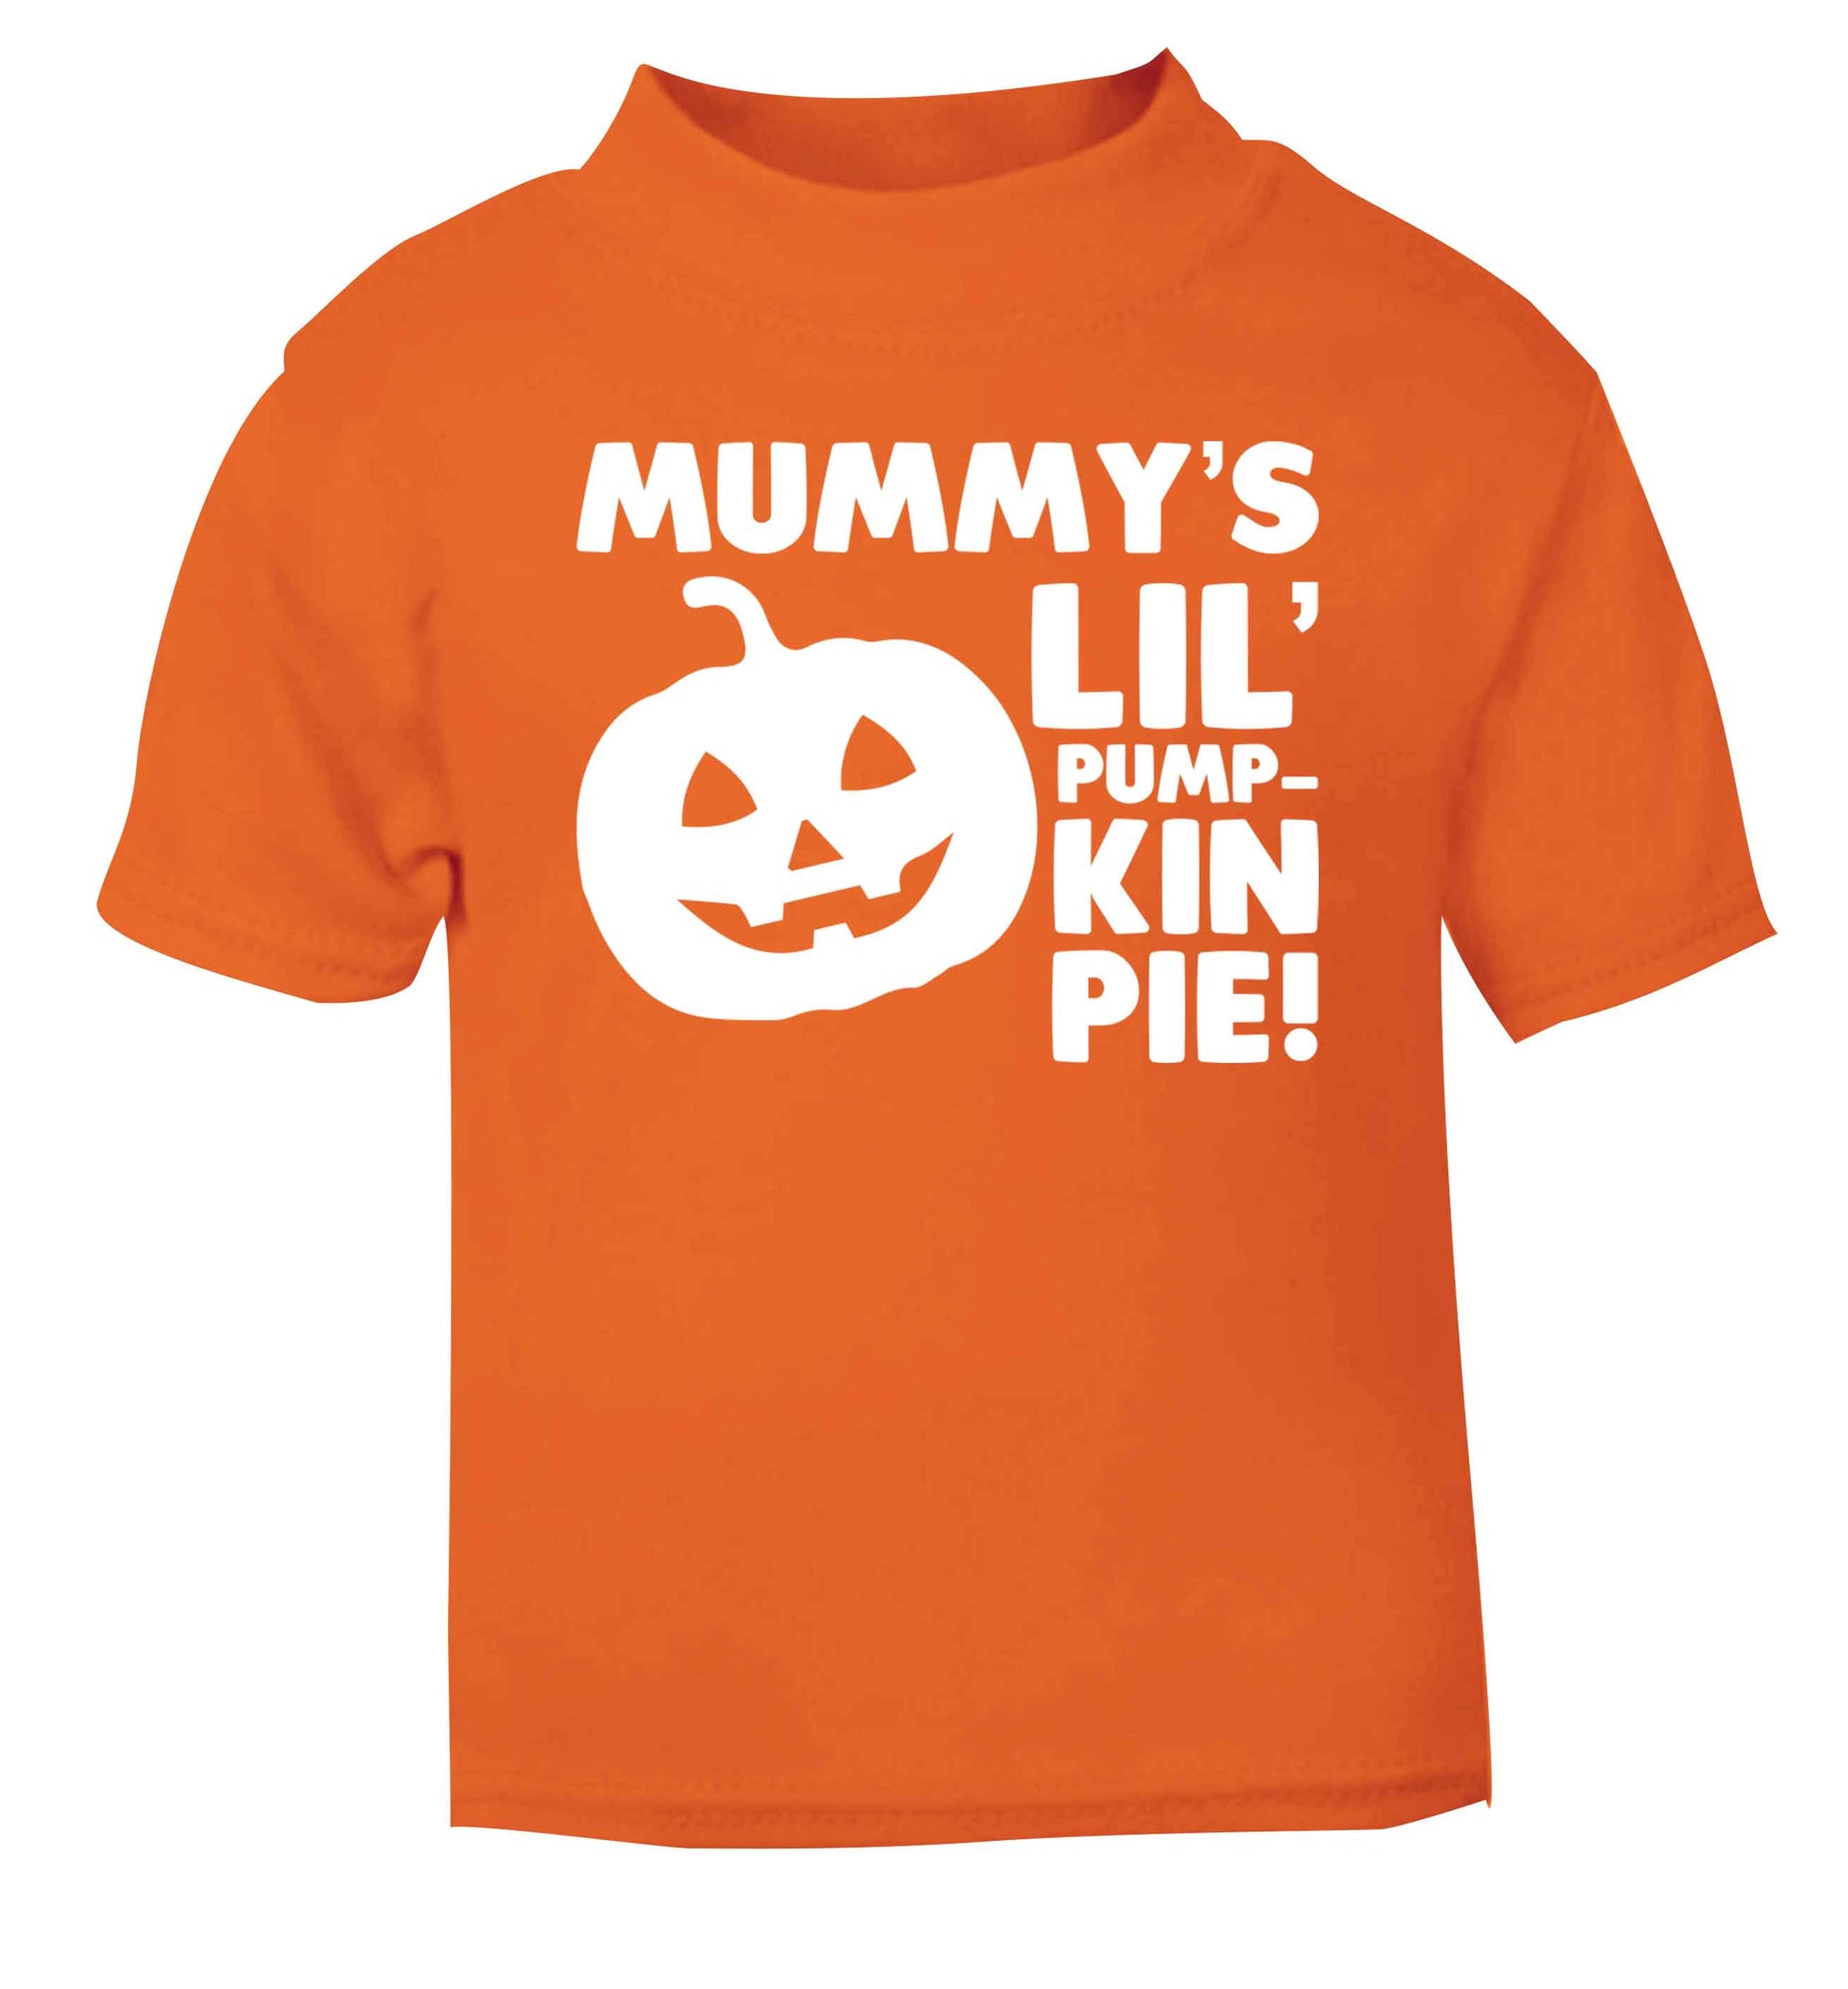 Mummy's lil' pumpkin pie orange baby toddler Tshirt 2 Years